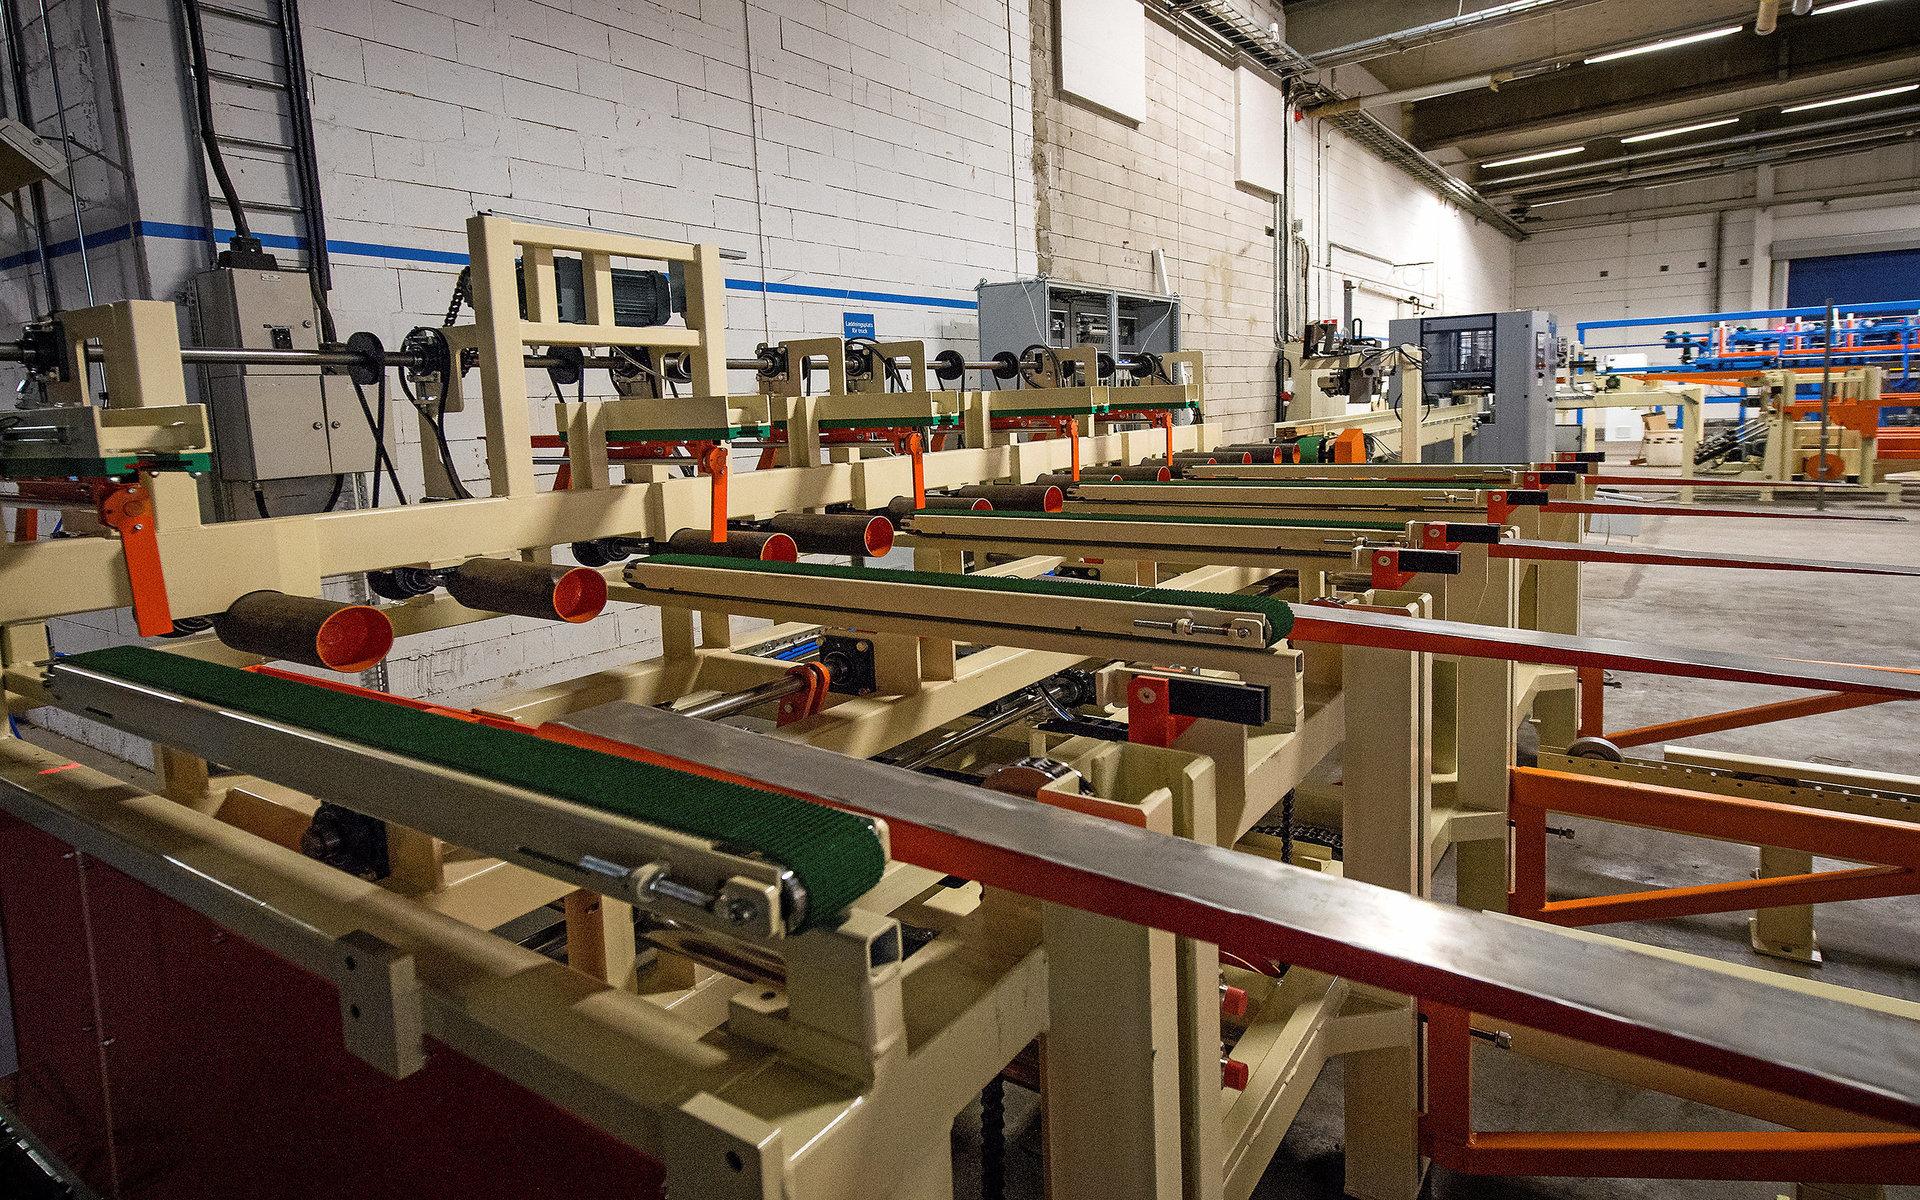 System Hall tillverkar jättelika maskiner för träindustrun och satsar på att bygga på hemmaplan med start i november. Arkiv.